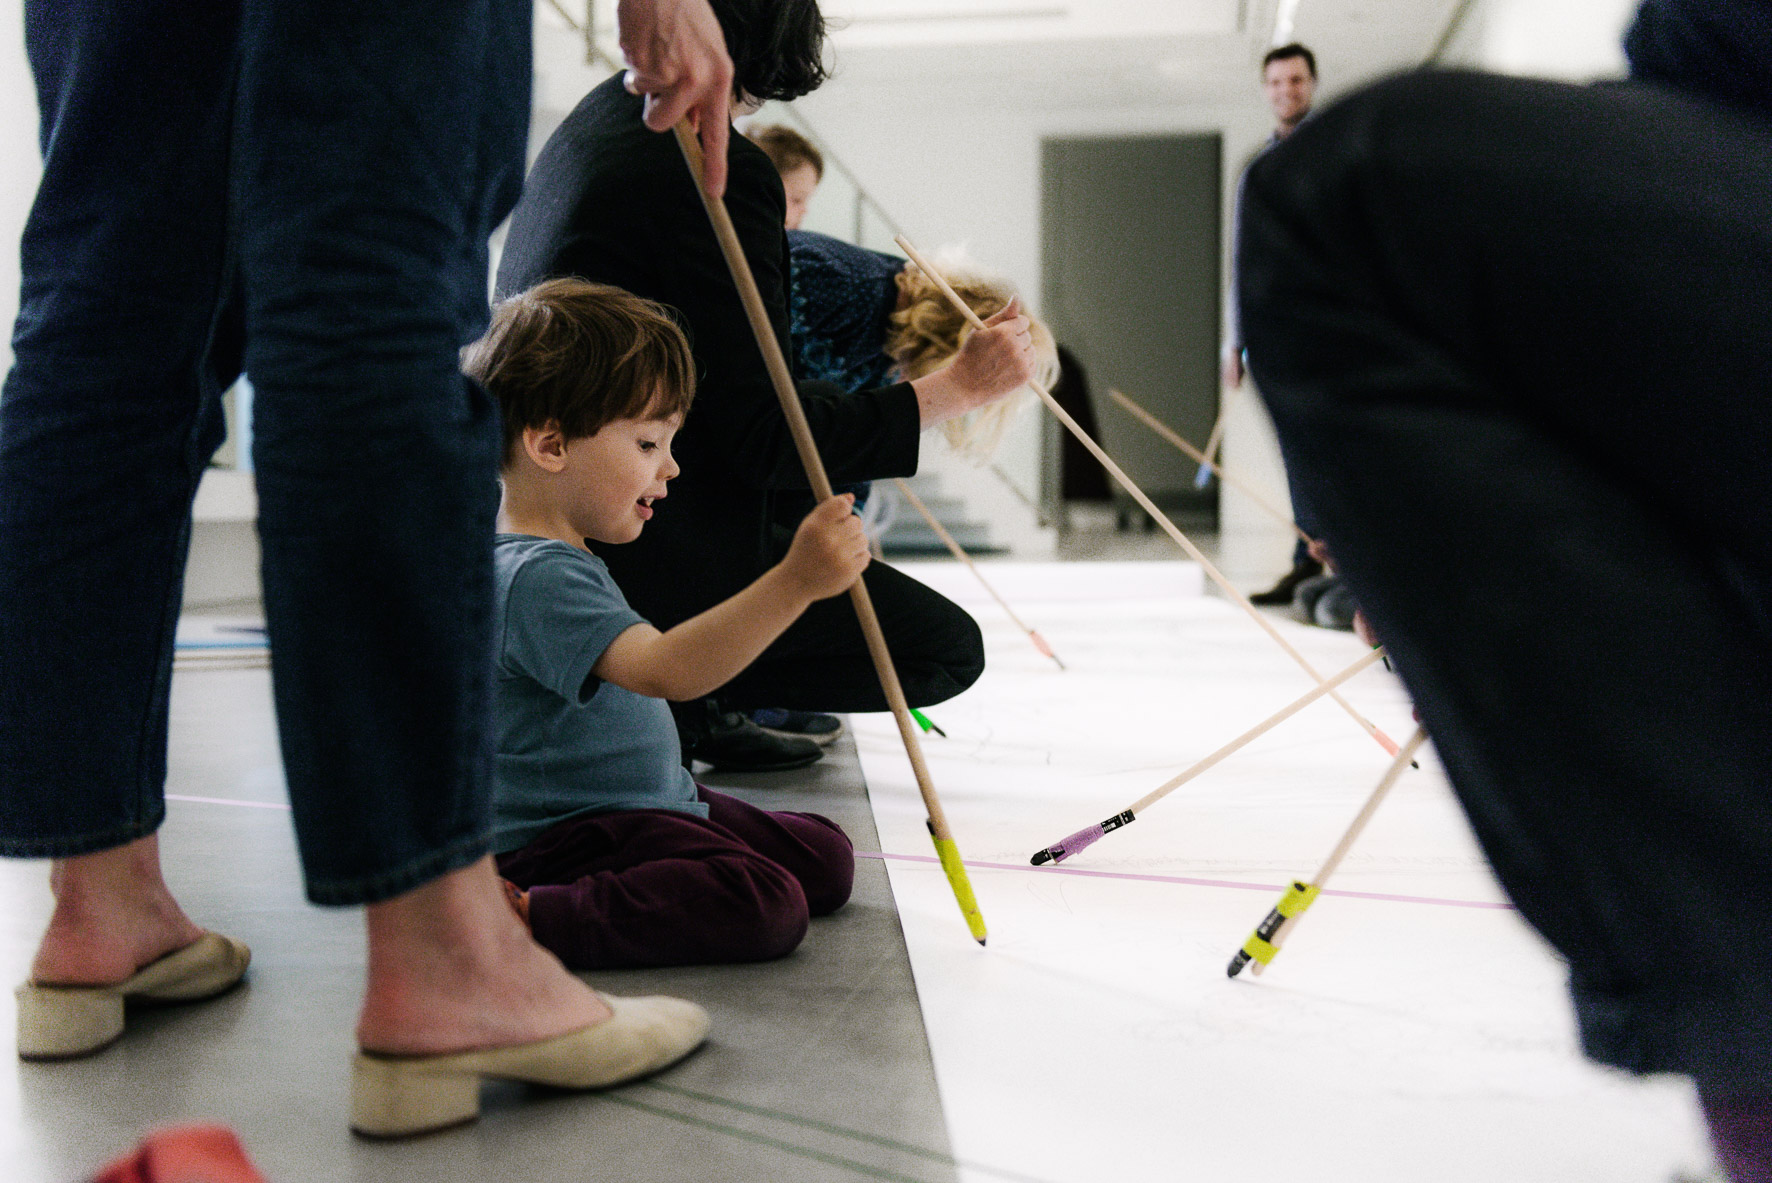 Foto: Ein Kind und mehrere Erwachsene malen gemeinsam am Boden.